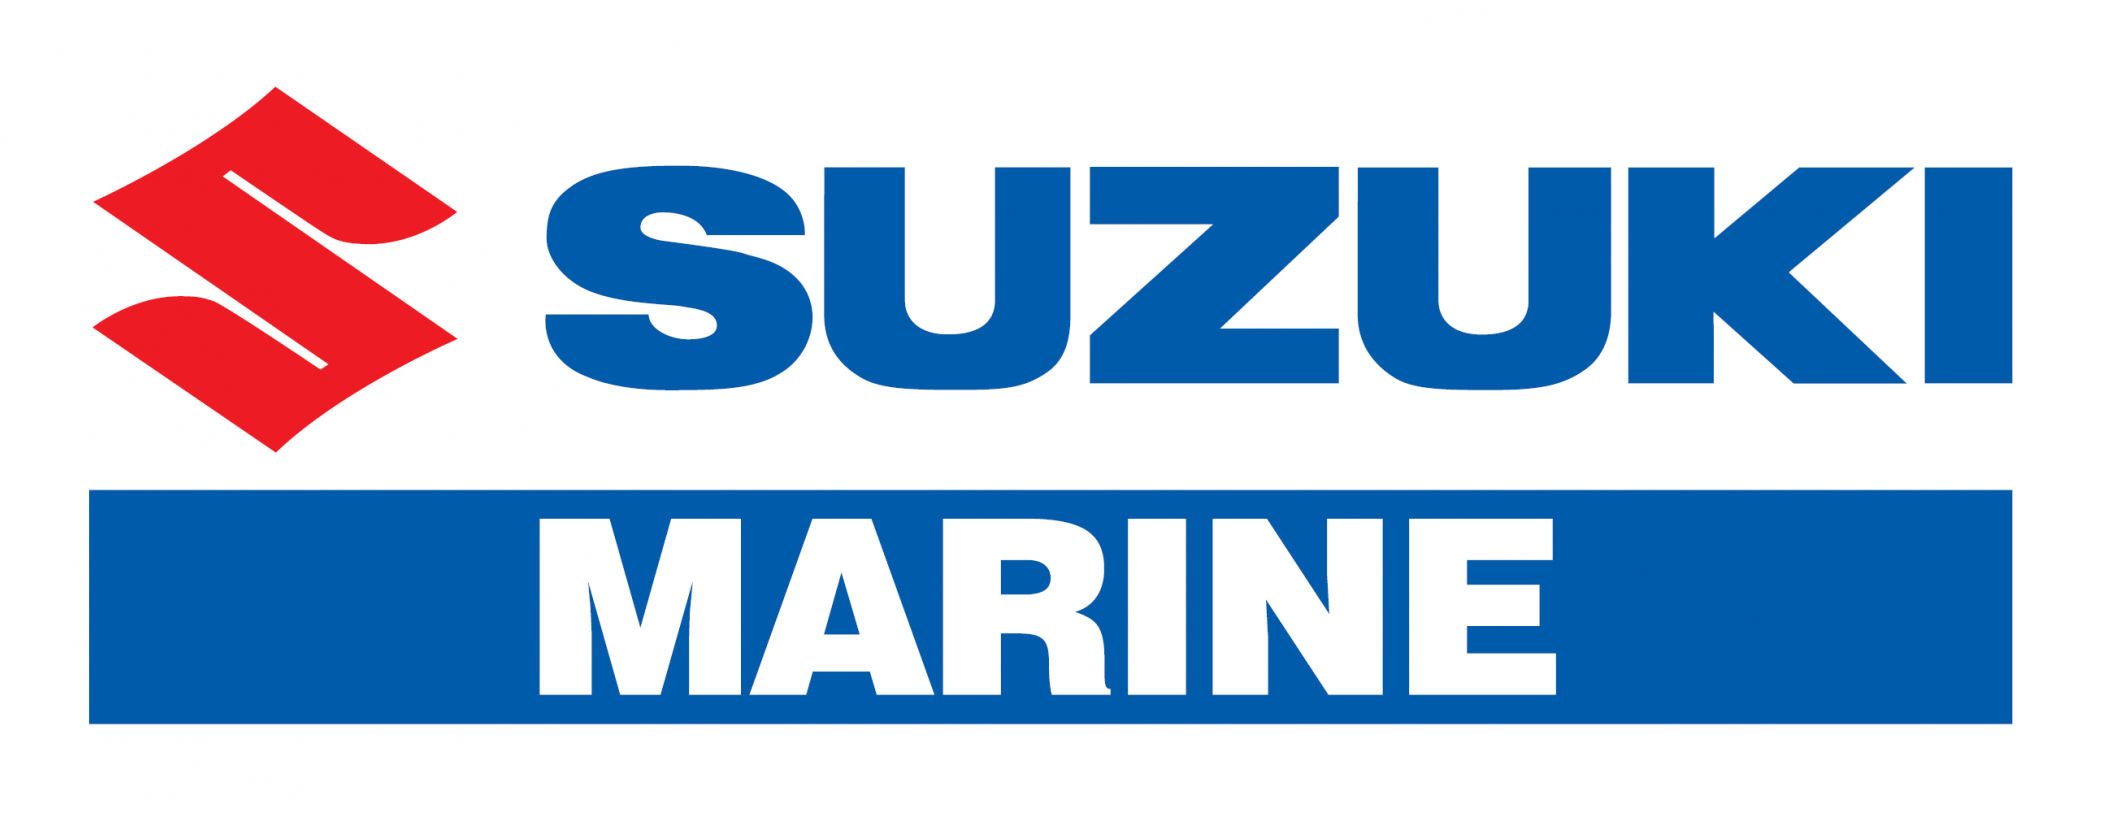 Suzuki Marine Logo